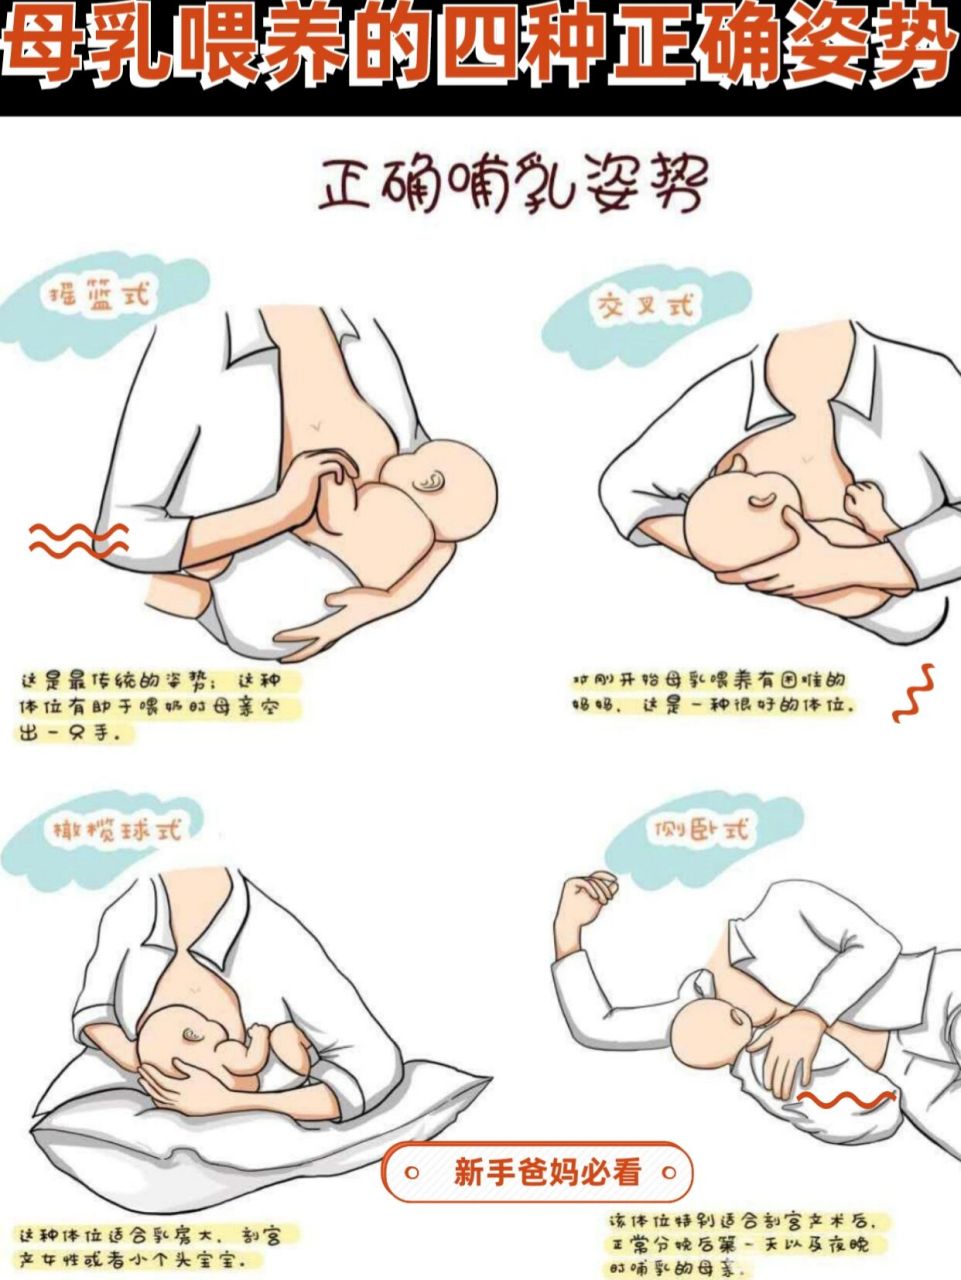 母乳喂养的四种正确姿势主要分为摇篮抱法的喂奶方式,侧卧位的喂奶